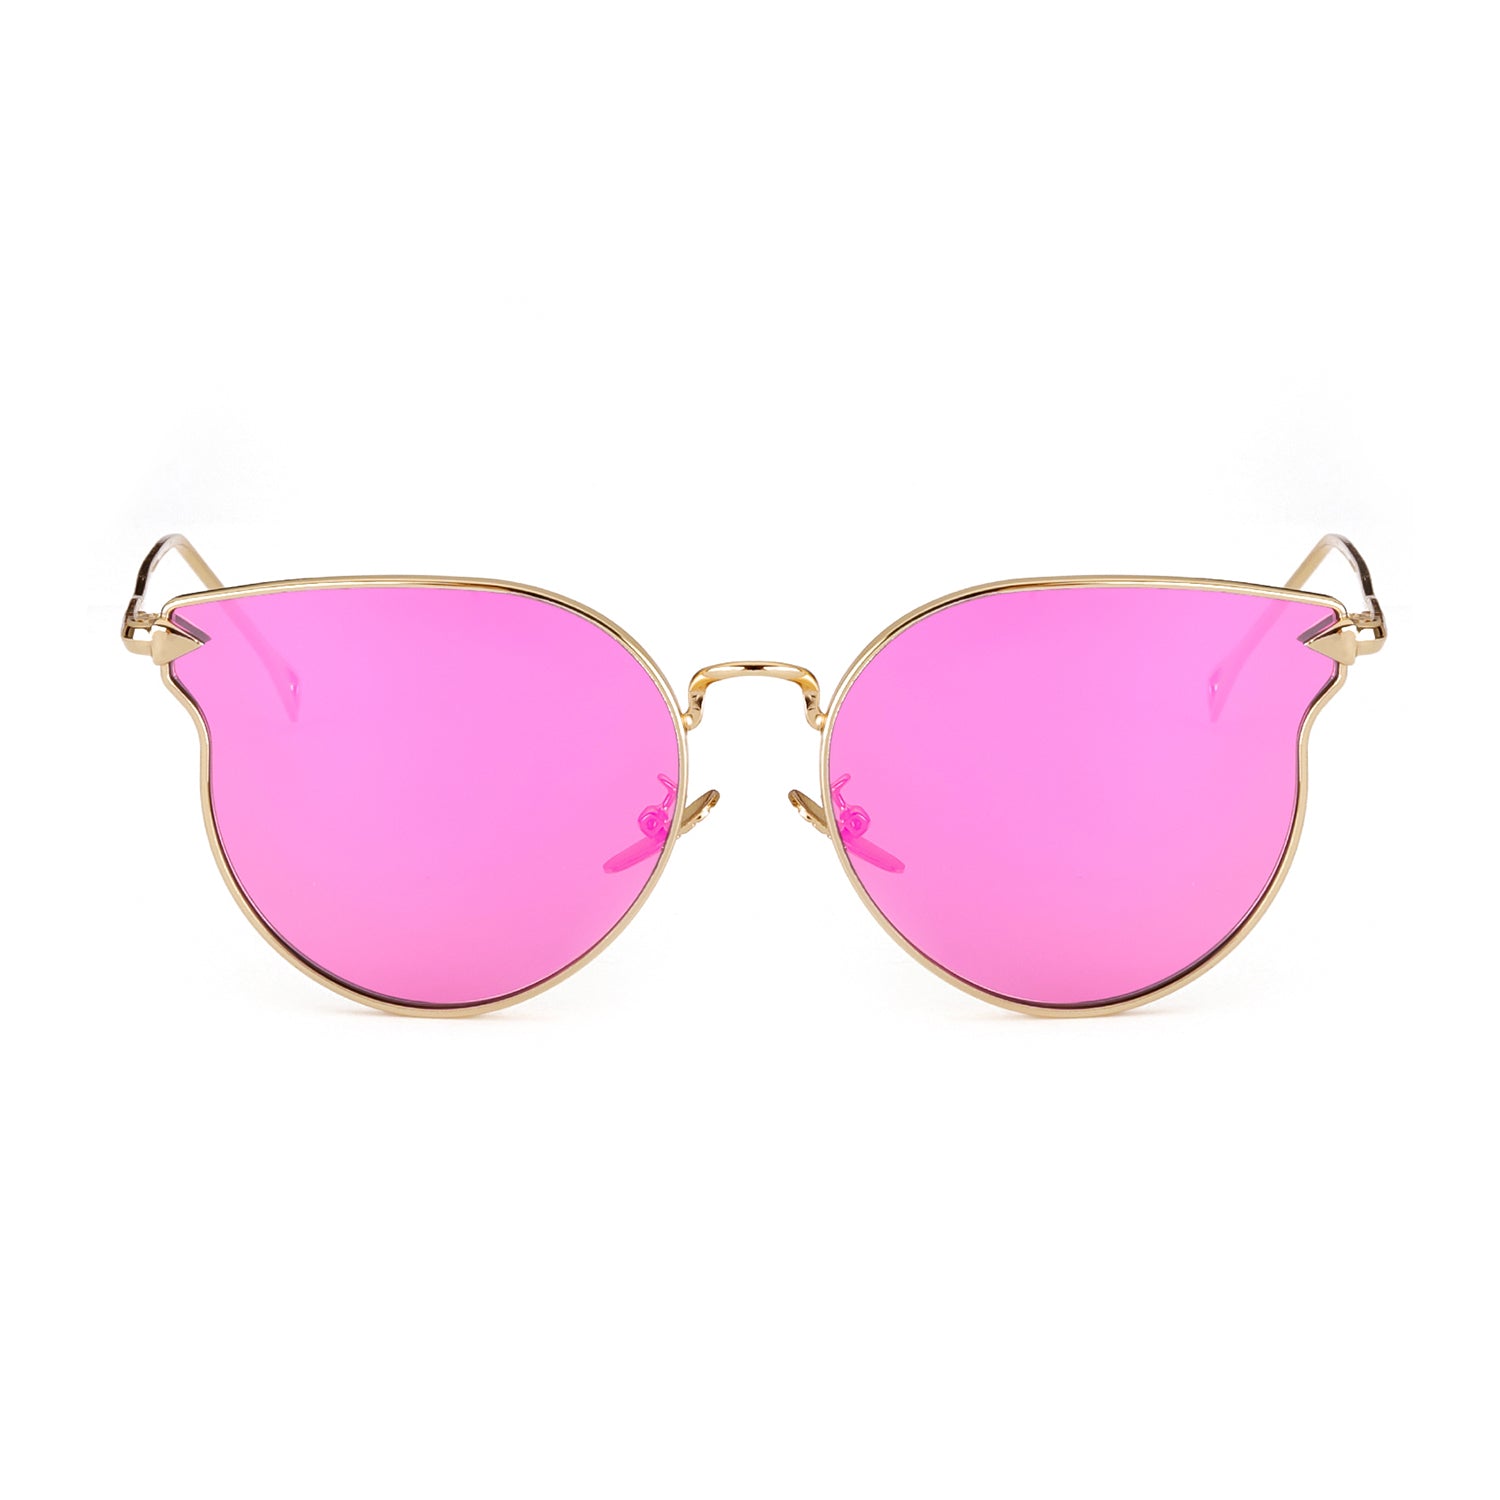 LVIOE Cat Eye Mirrored Lenses Ultra Thin Light Metal Frame Women Sunglasses - LVIOE